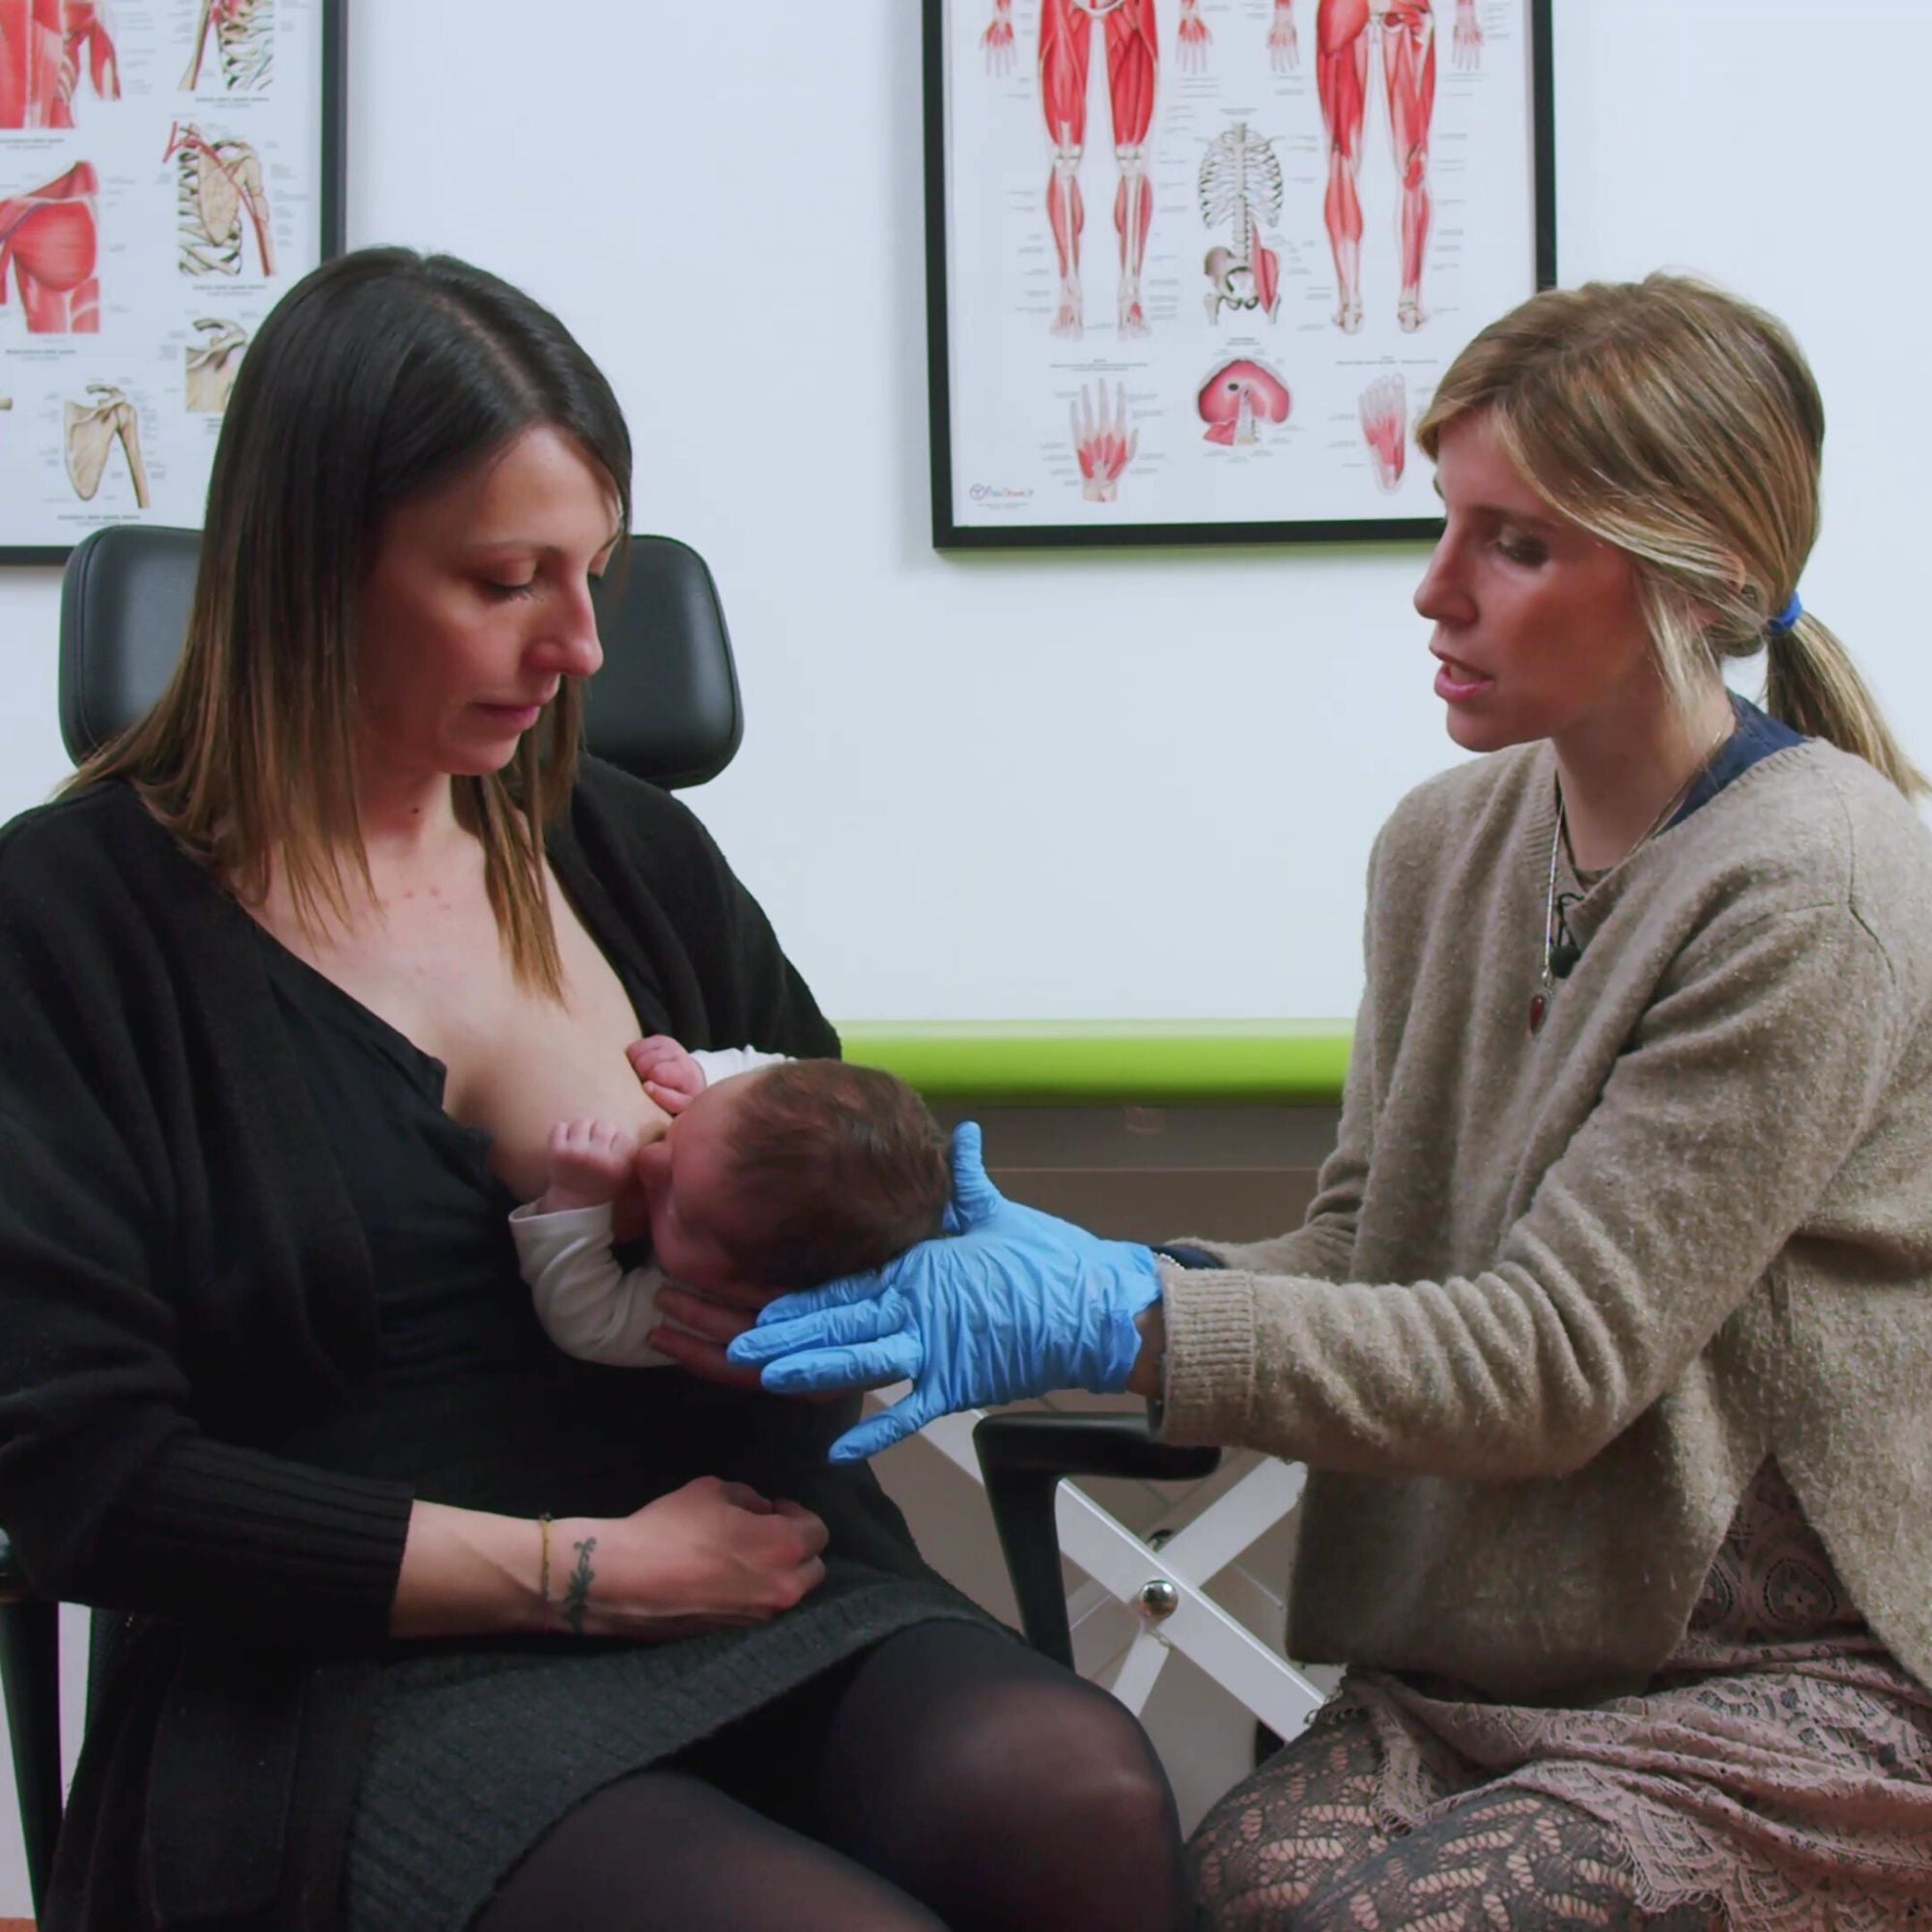 videocorso allattamento online: come allattare al seno, come attaccare il neonato correttamente al seno e le migliori posizioni per allattare